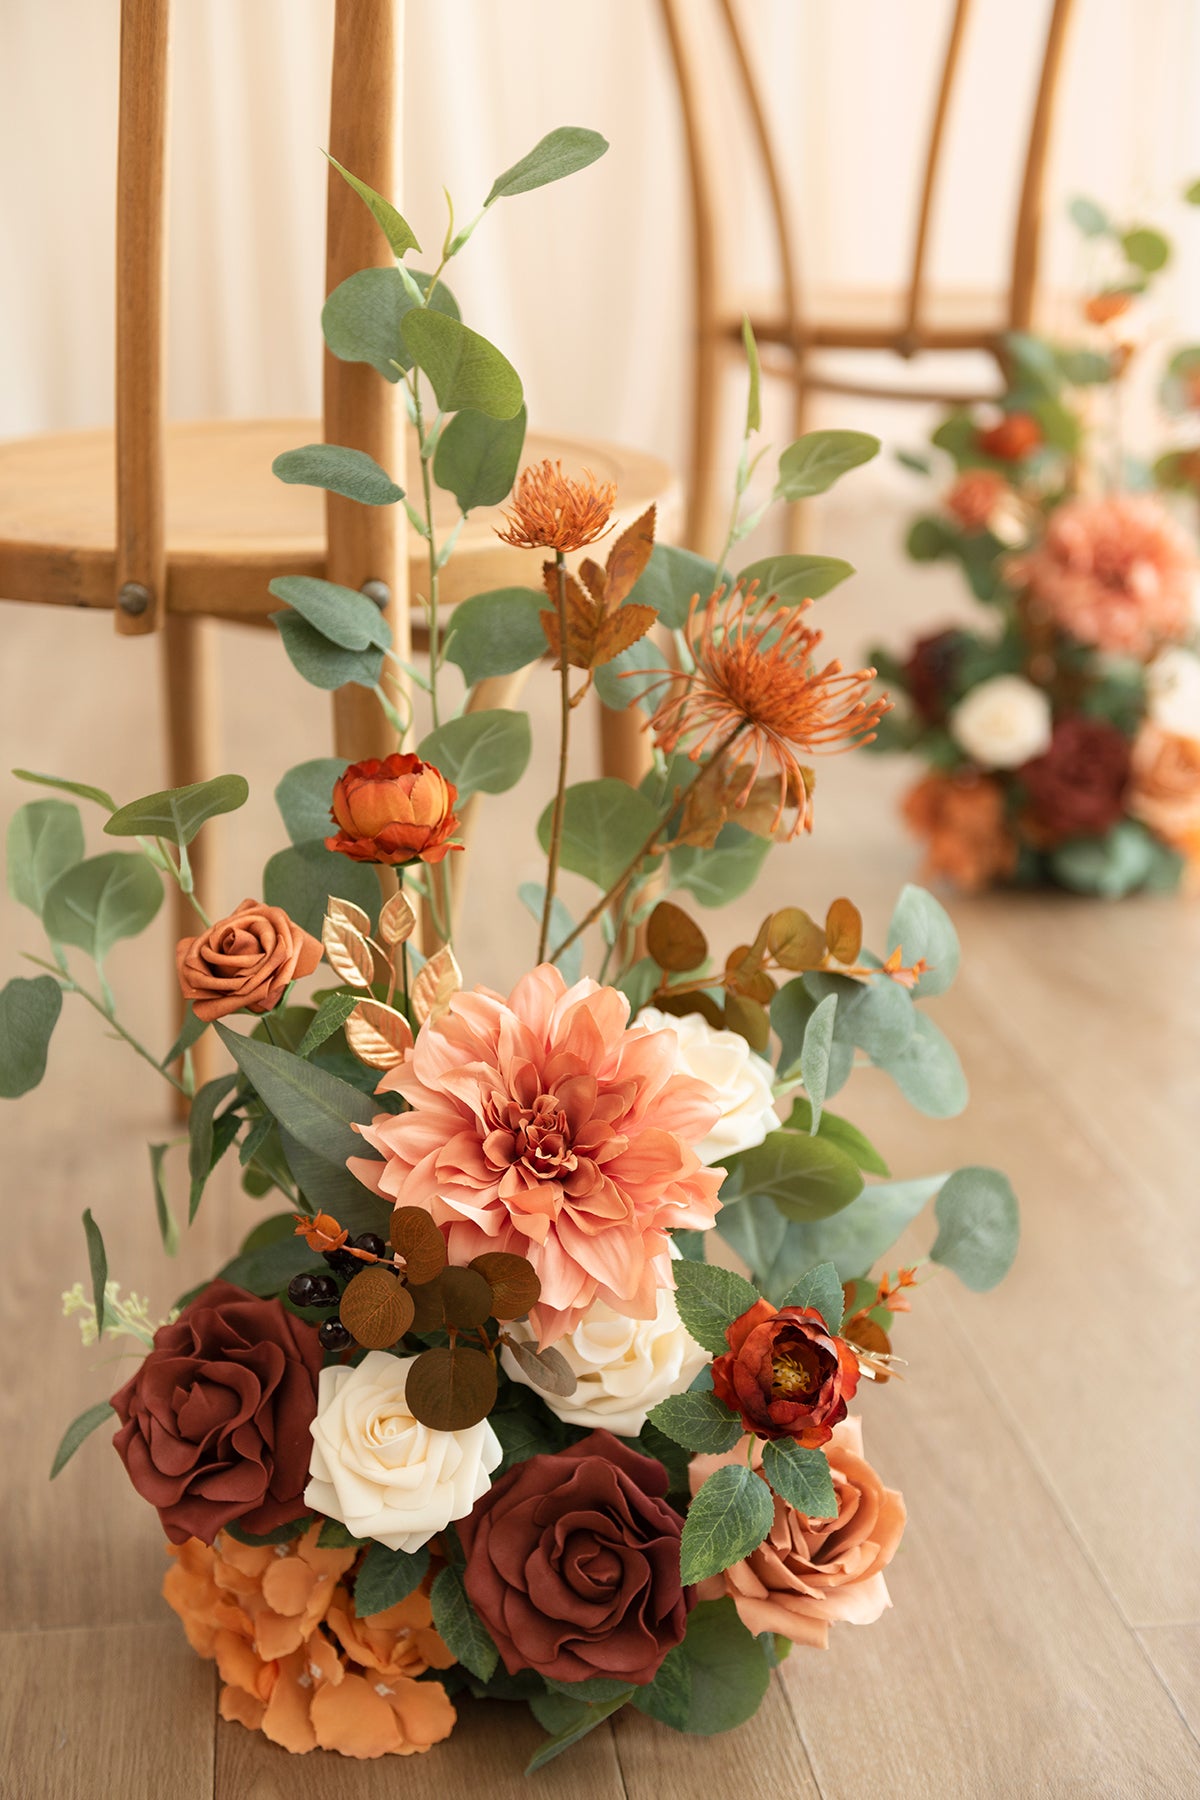 Wedding Aisle Runner Flower Arrangement in Sunset Terracotta